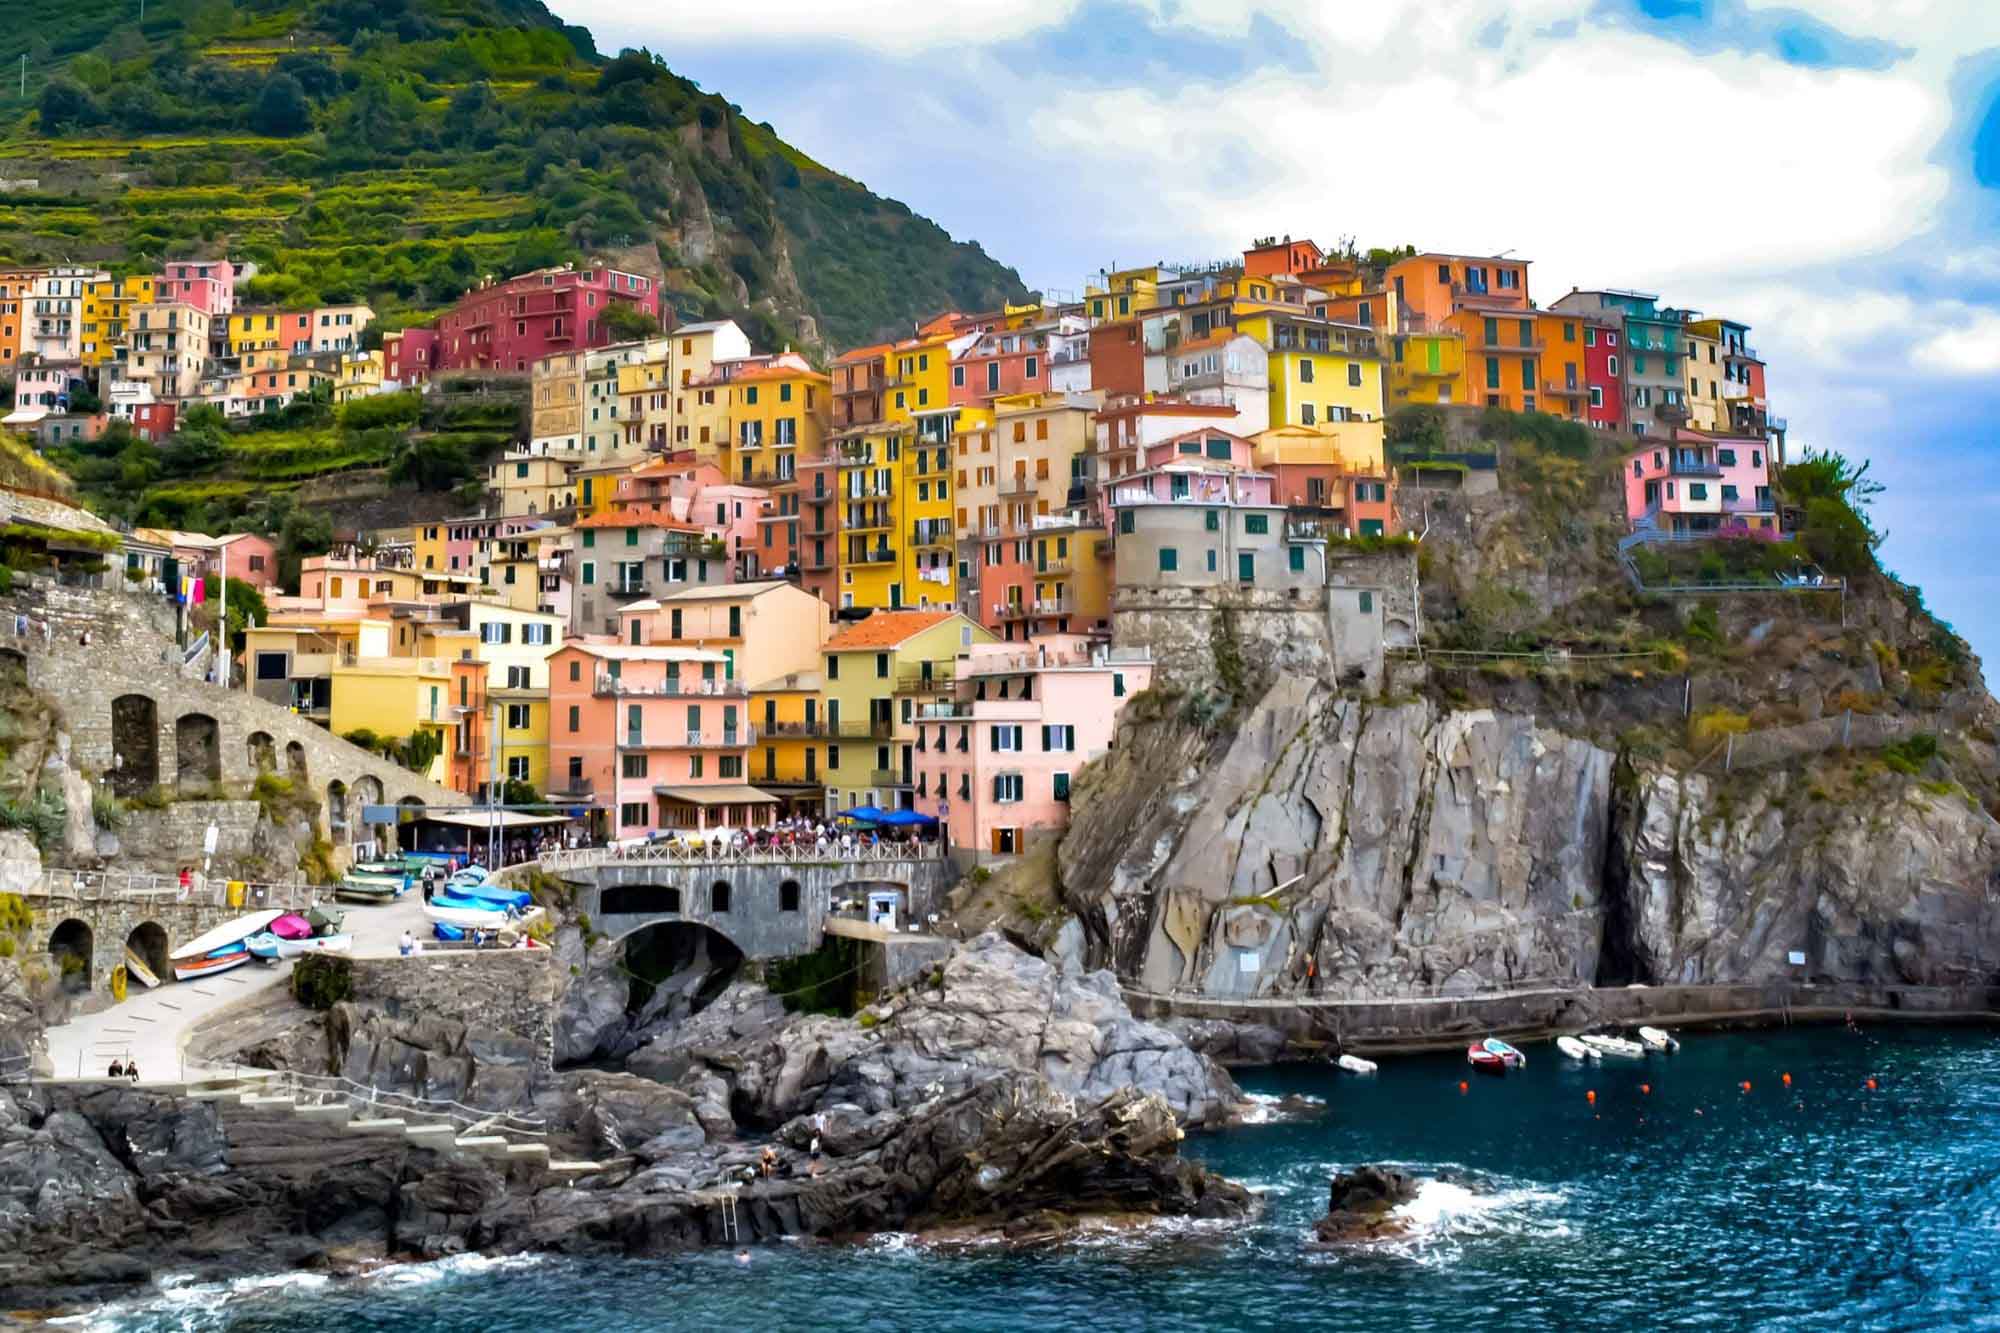 Colorful buildings along the Cinque Terre coastline in Italy